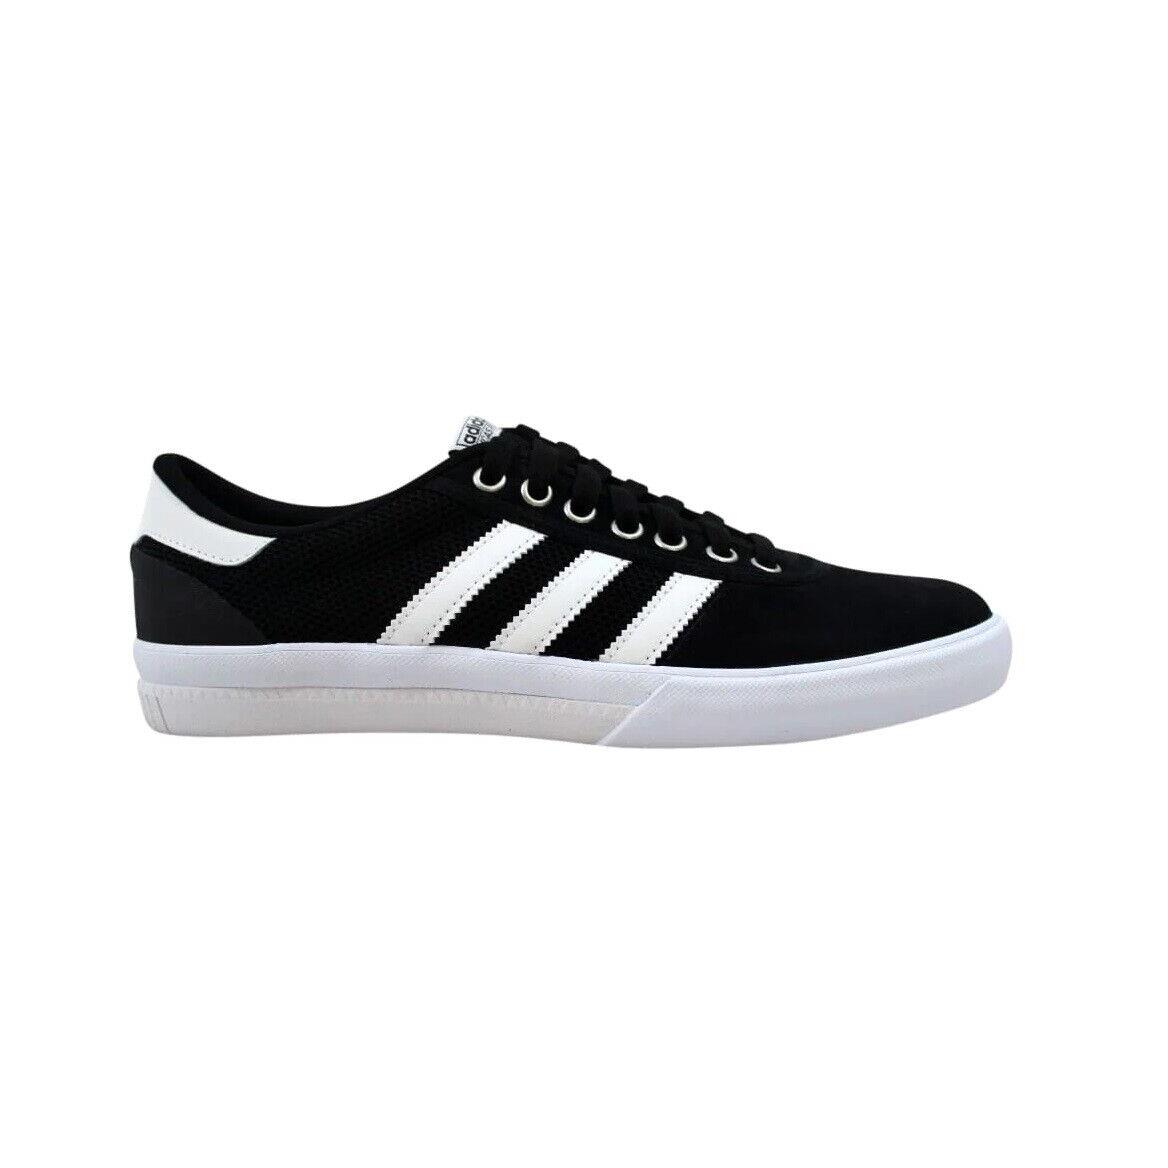 Adidas Lucas Premiere Black White Skateboard Sneaker B39575 361 Men`s Shoes